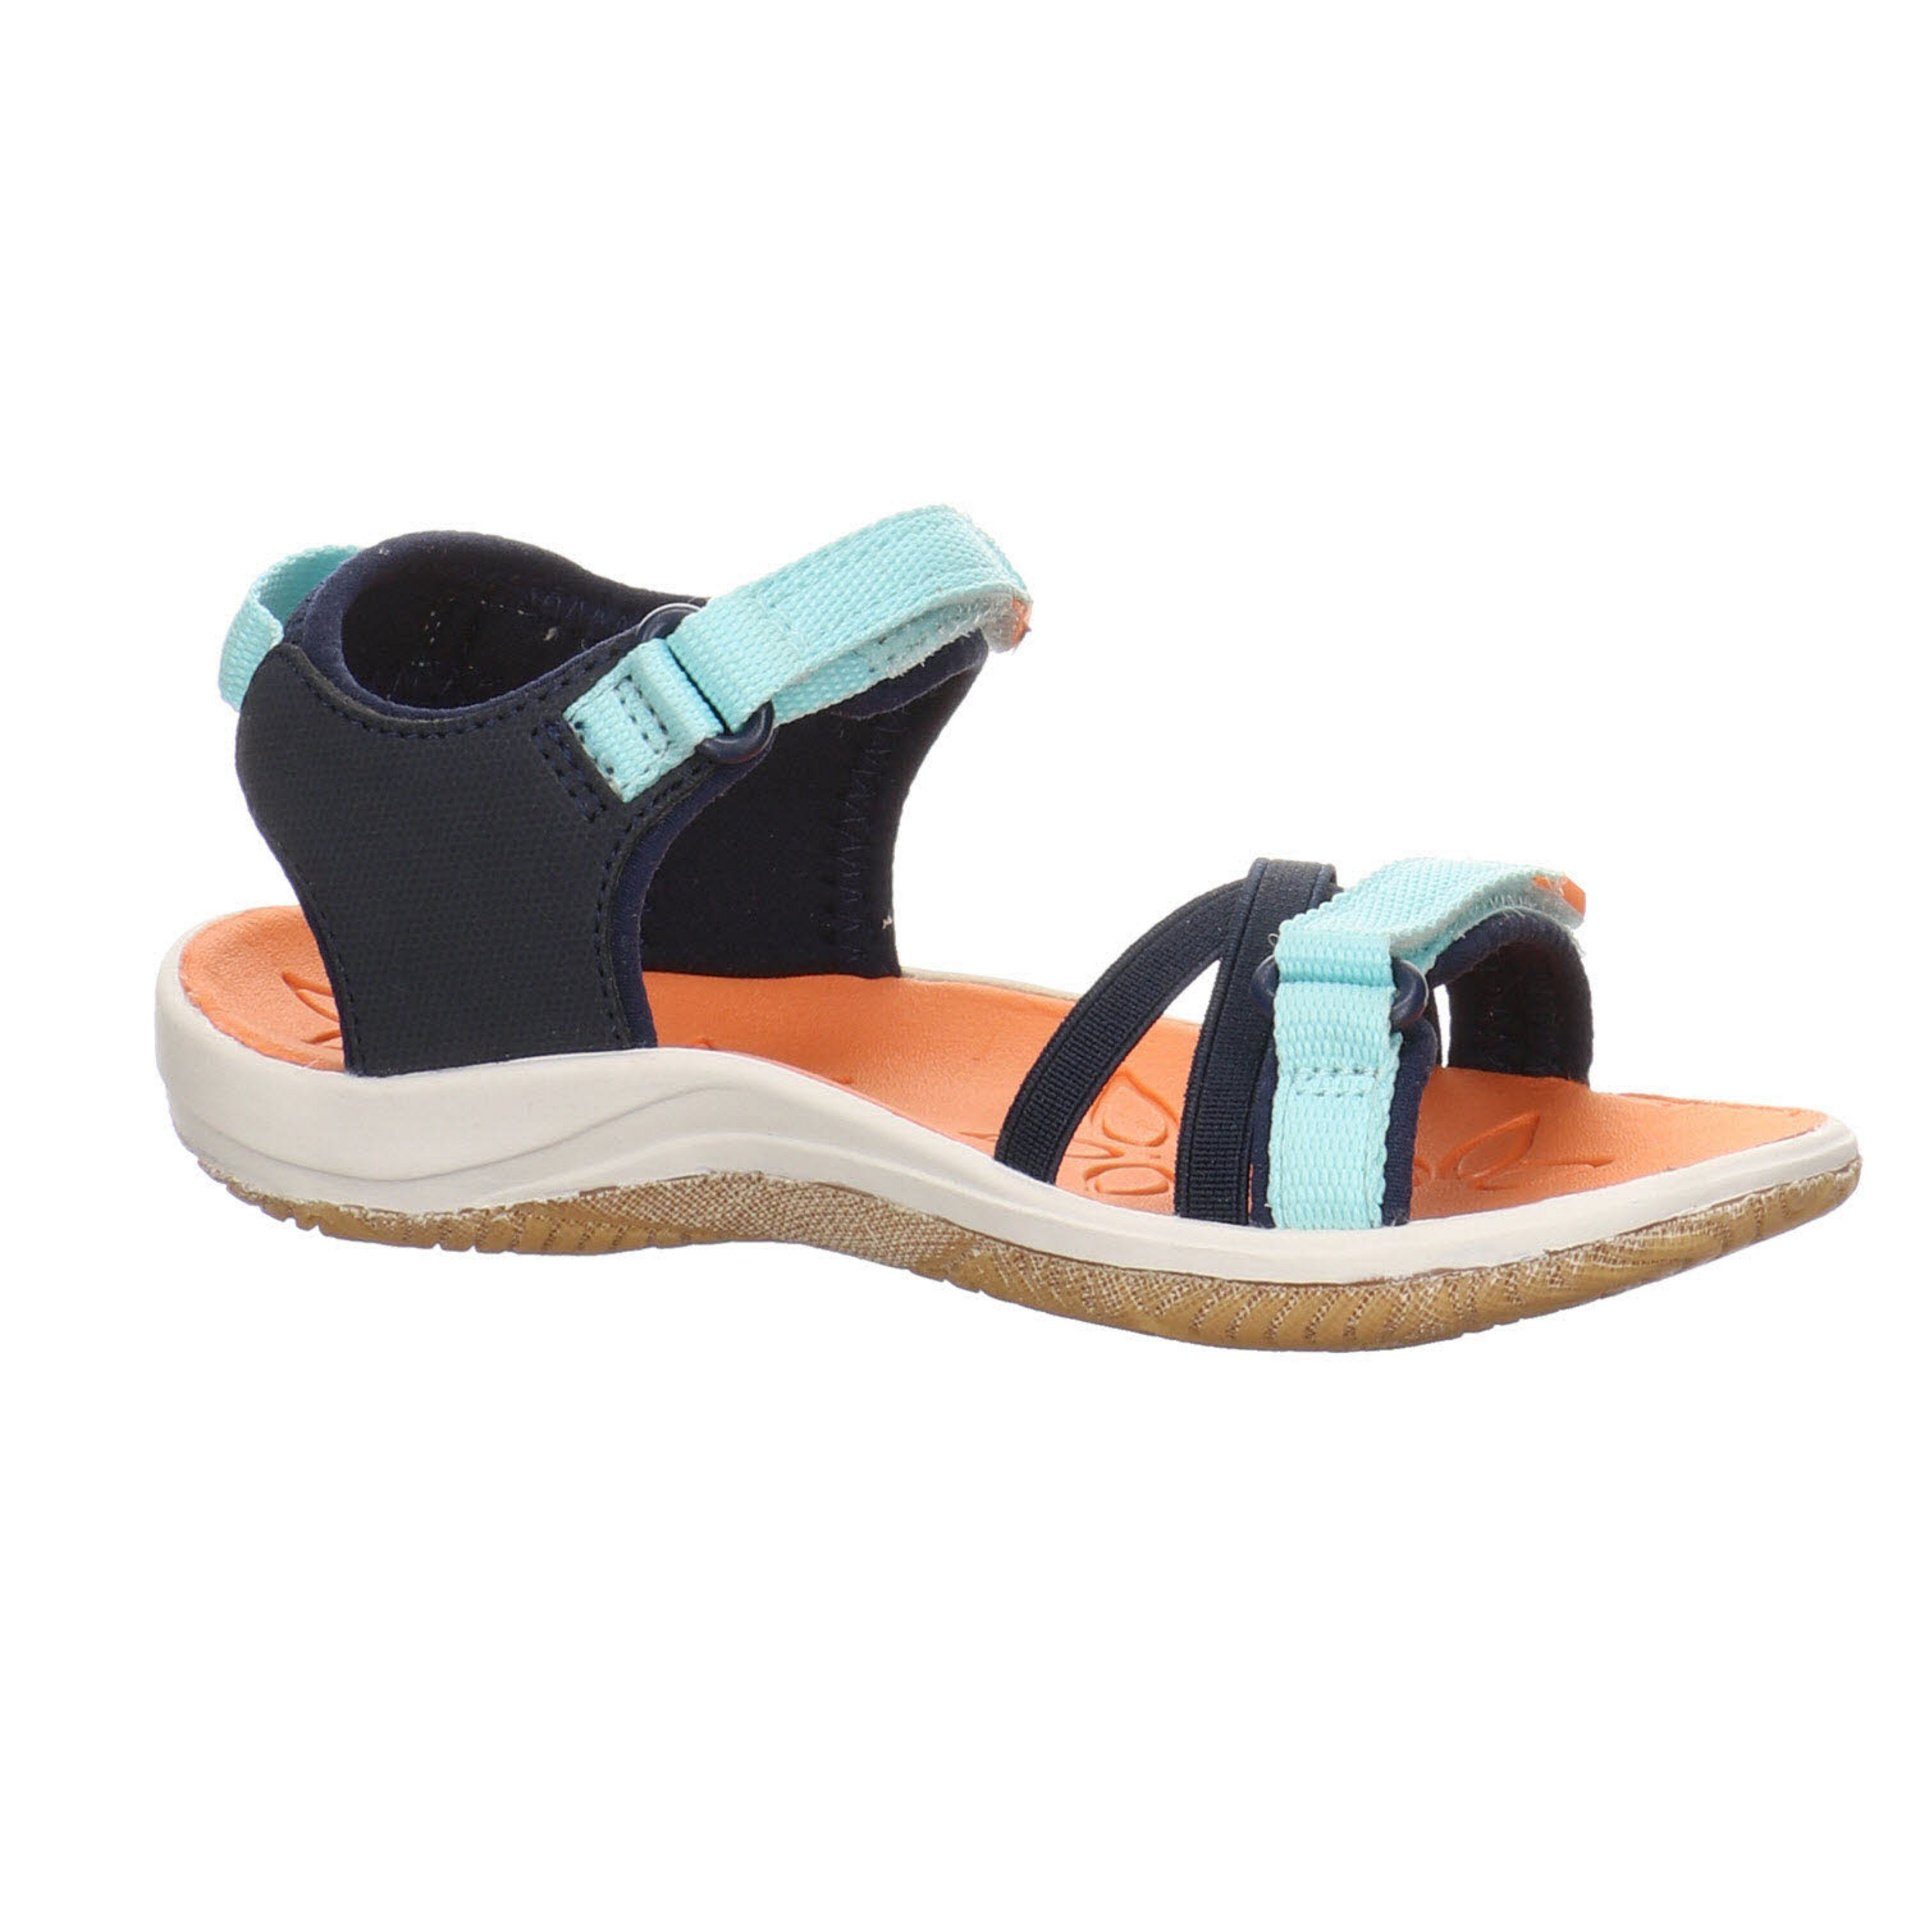 Sandale Verano Sandalen blau Mädchen Sandale Schuhe Textil Keen mittel